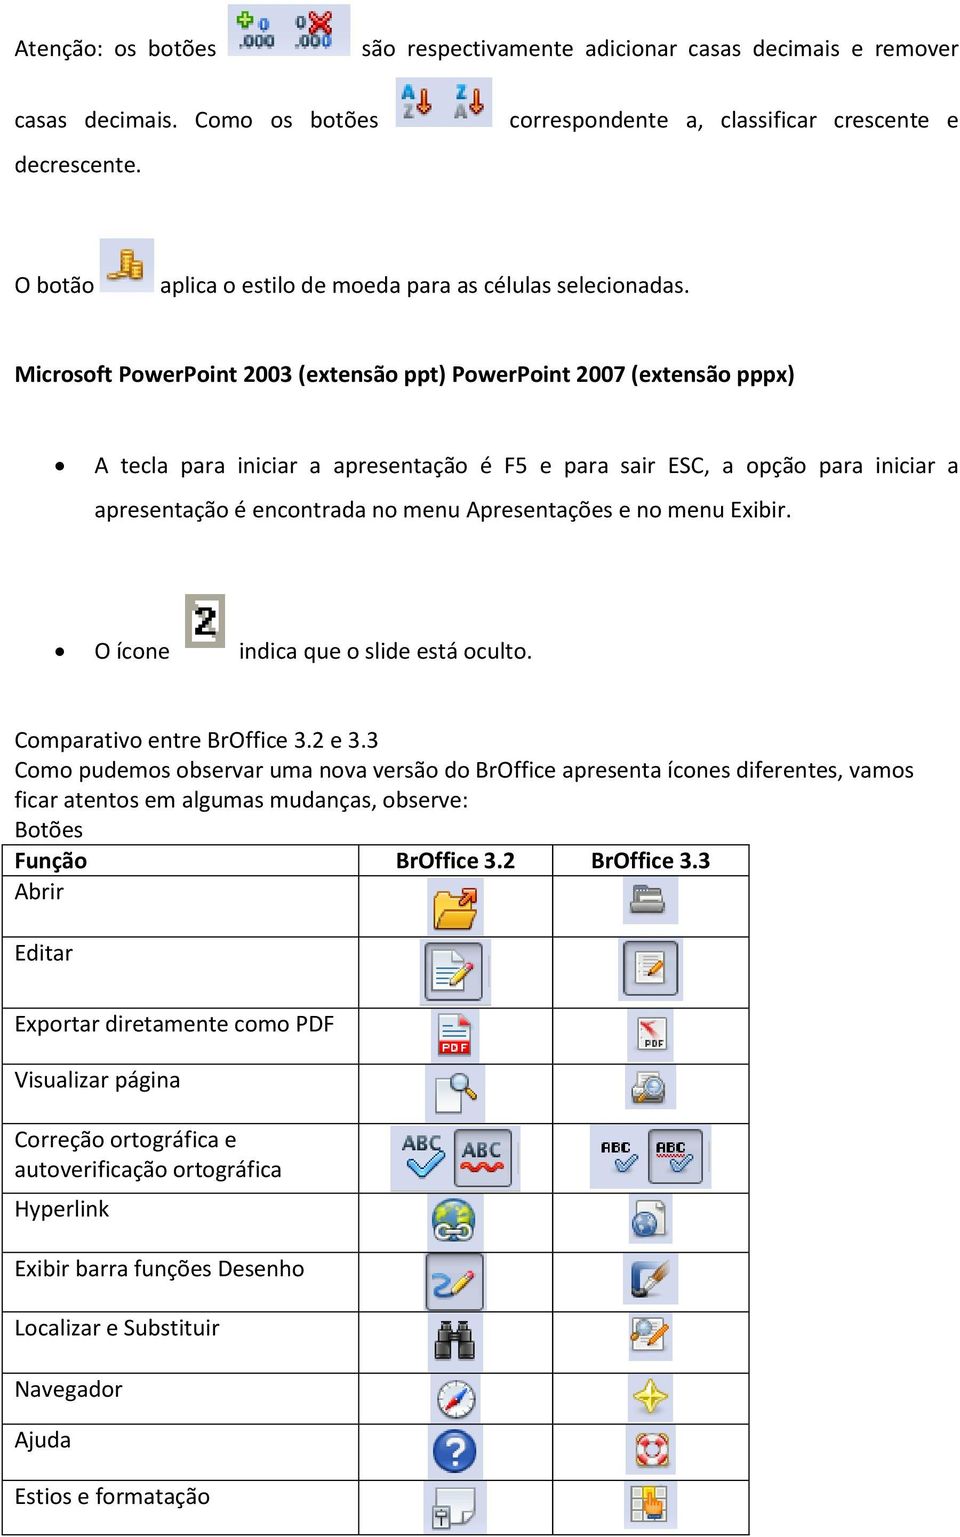 Microsoft PowerPoint 2003 (extensão ppt) PowerPoint 2007 (extensão pppx) A tecla para iniciar a apresentação é F5 e para sair ESC, a opção para iniciar a apresentação é encontrada no menu